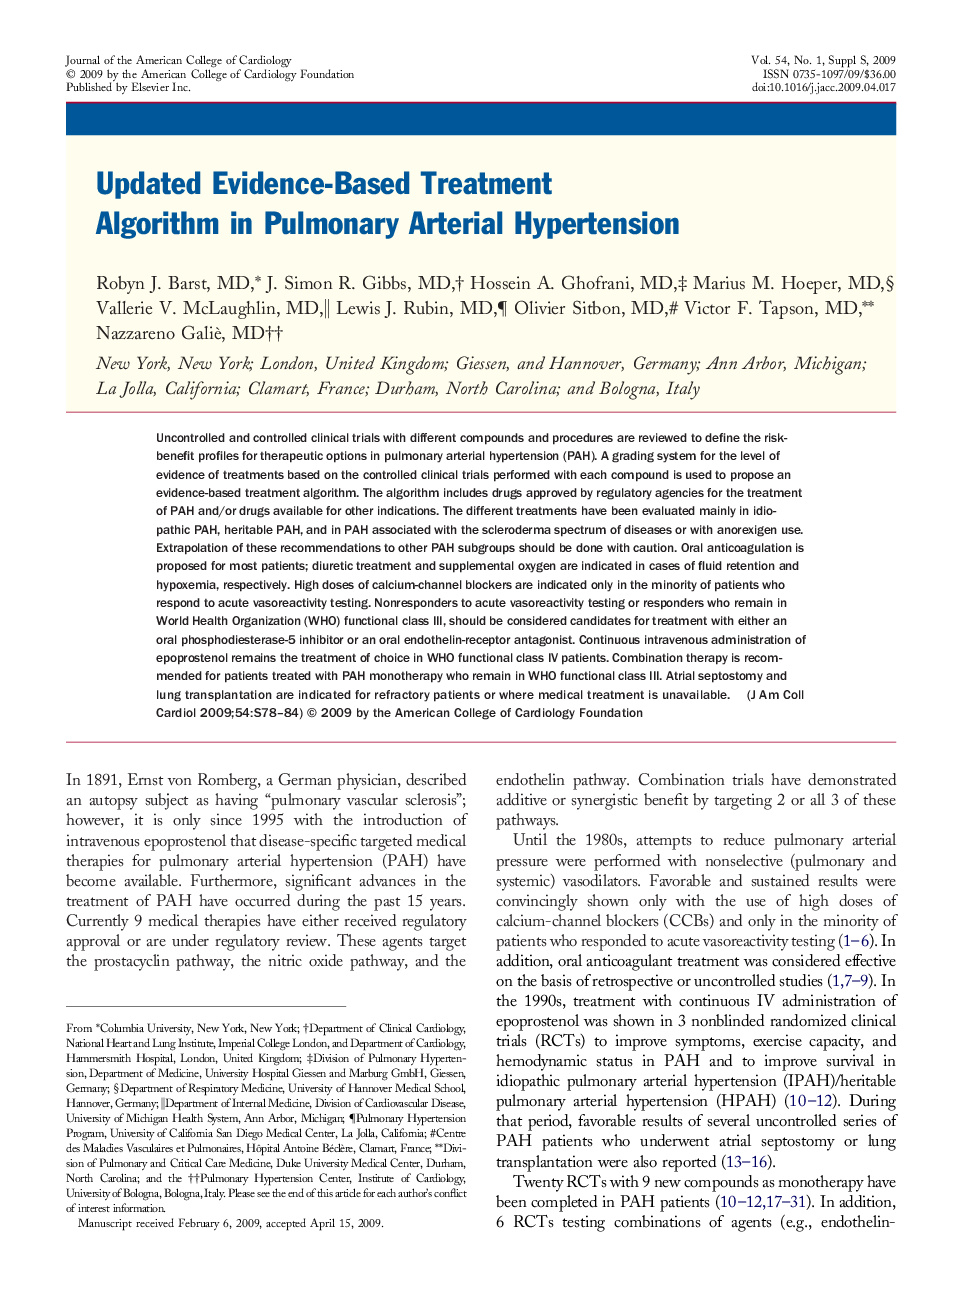 Updated Evidence-Based Treatment Algorithm in Pulmonary Arterial Hypertension 